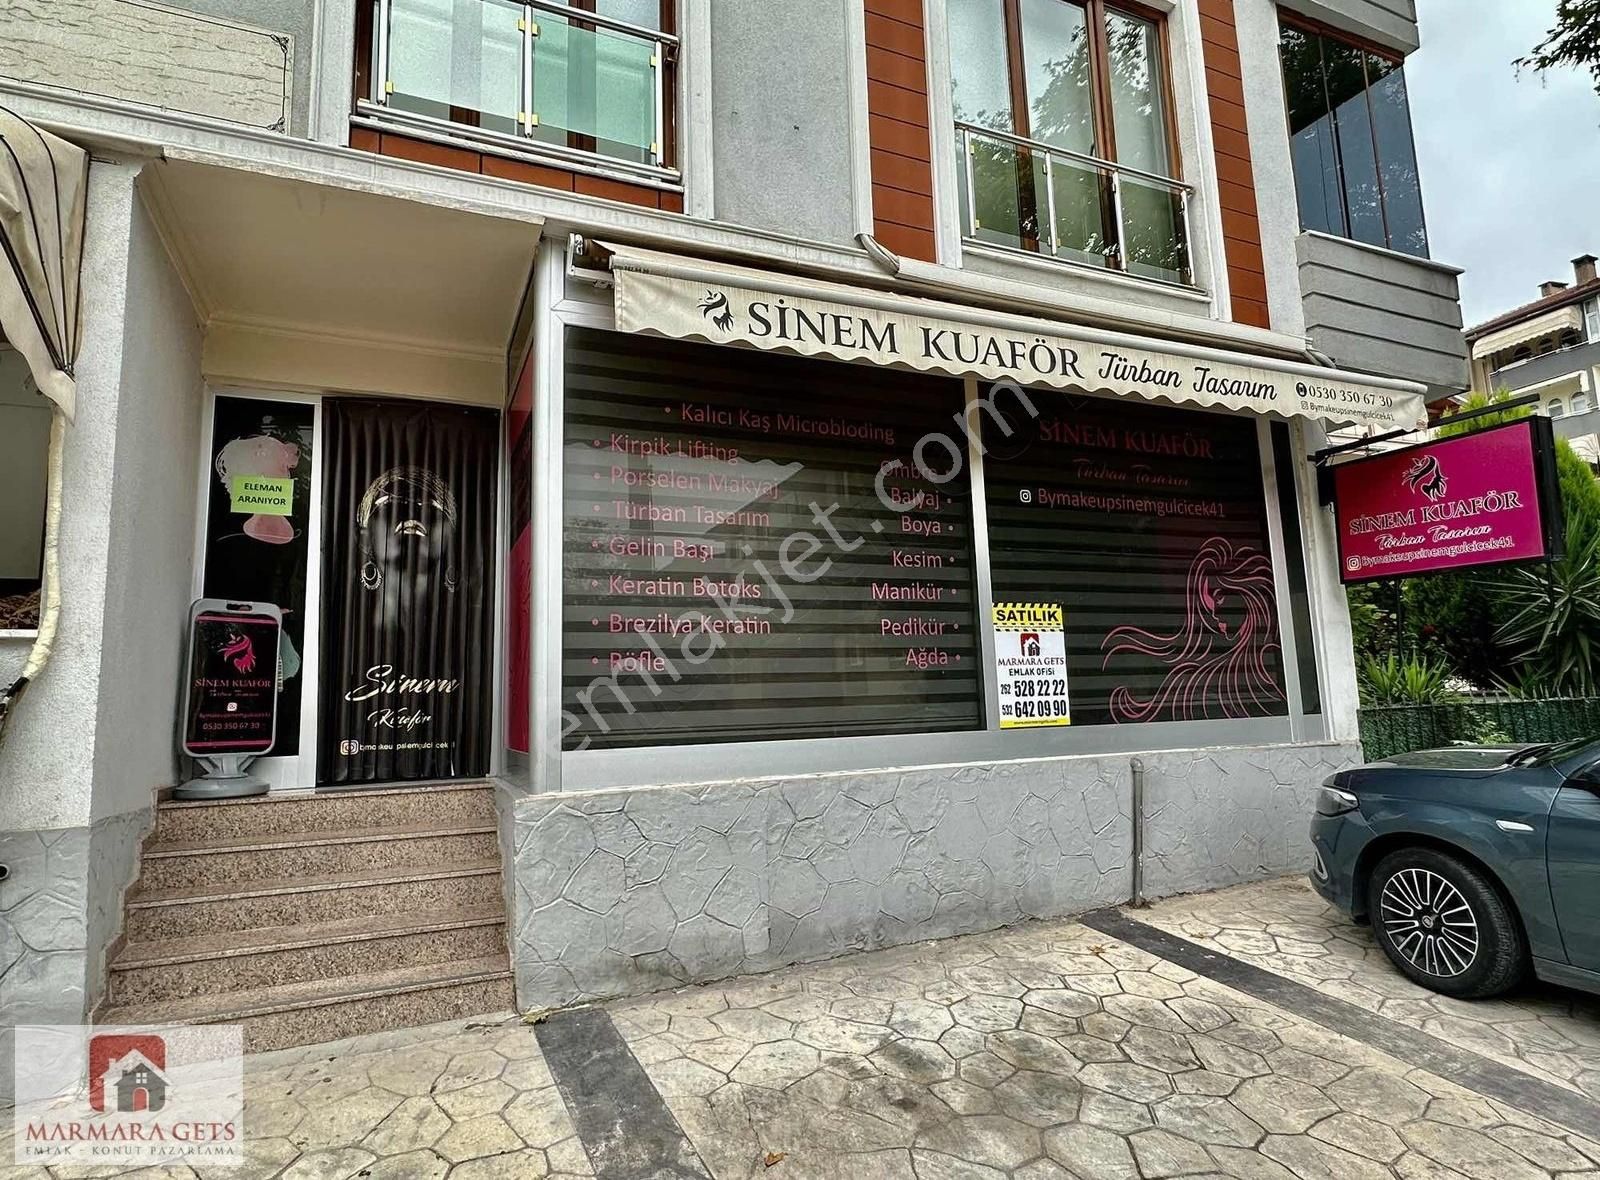 Körfez Mimar Sinan Satılık Dükkan & Mağaza MARMARA GETS - KÖRFEZ MİMARSİNAN'DA SATILIK İŞ YERİ